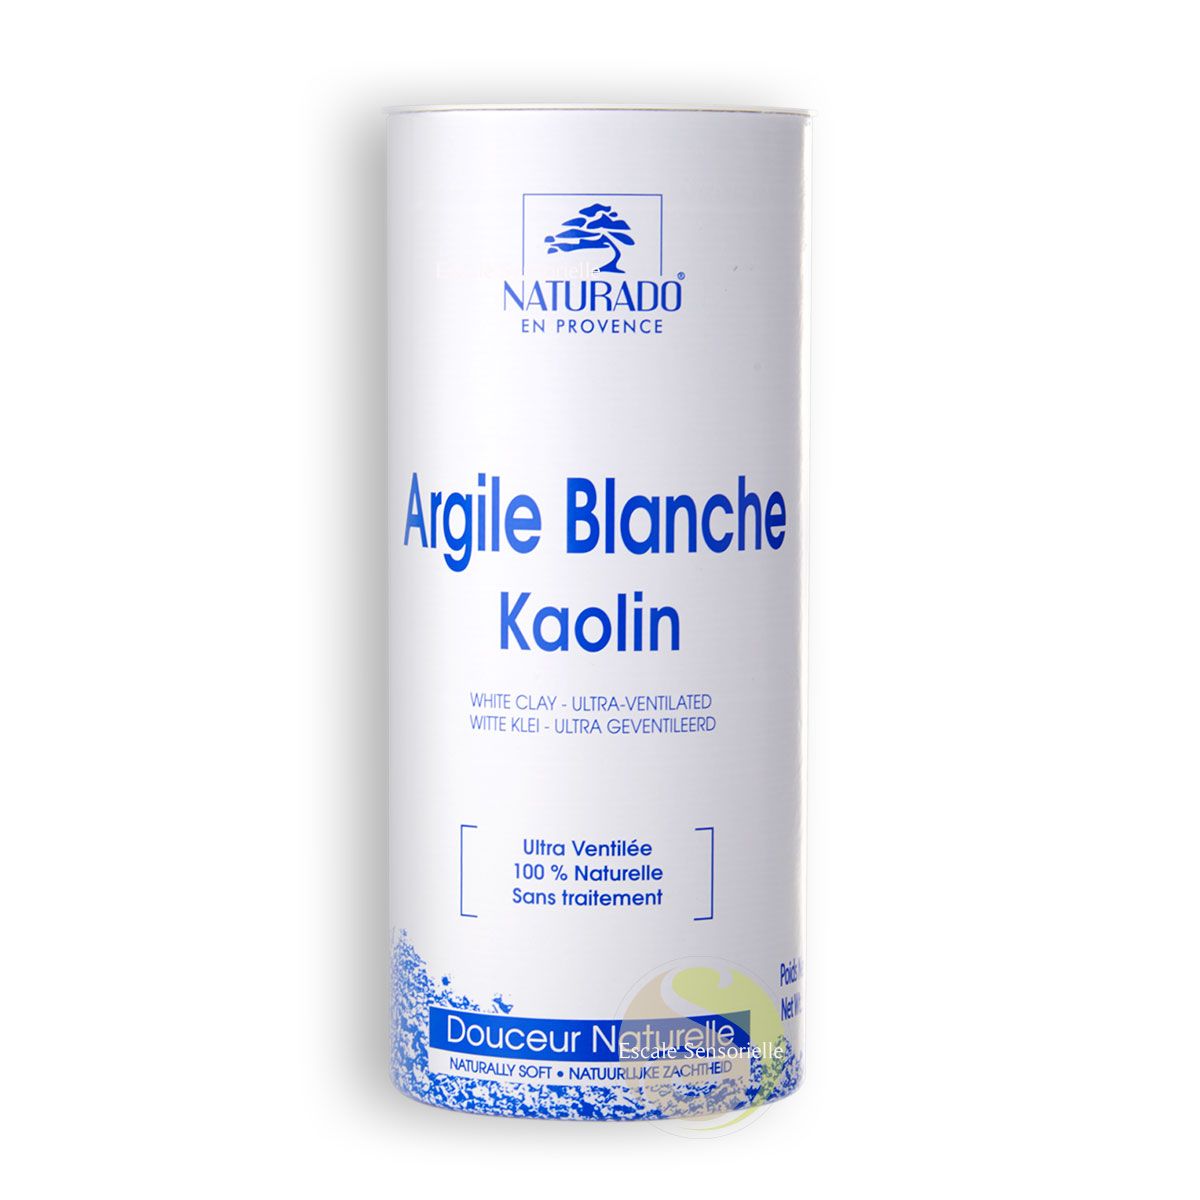 Argile blanche kaolin bio ultra ventilée adoucit et purifie la peau